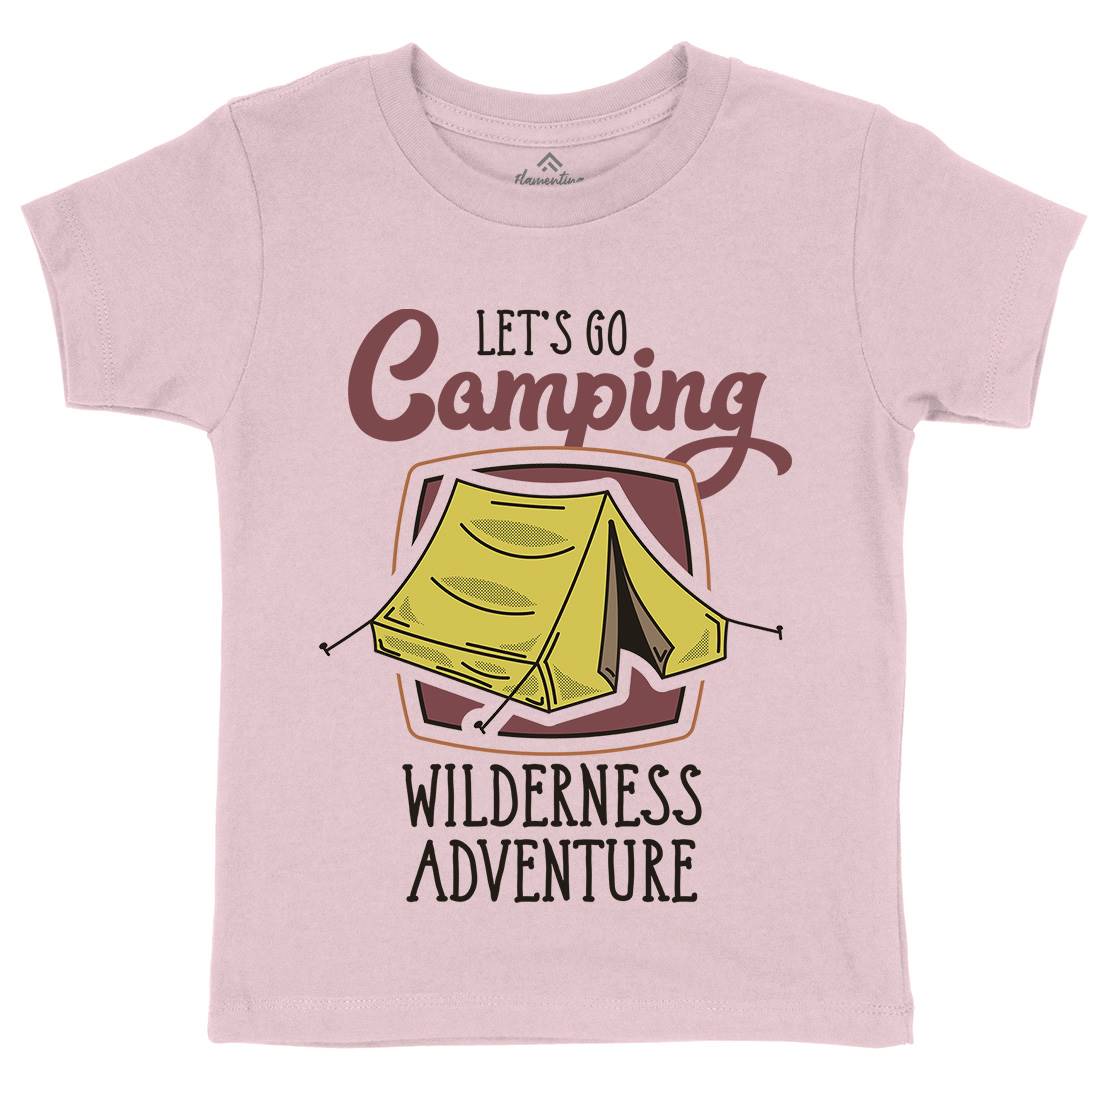 Wilderness Adventure Kids Crew Neck T-Shirt Nature D998